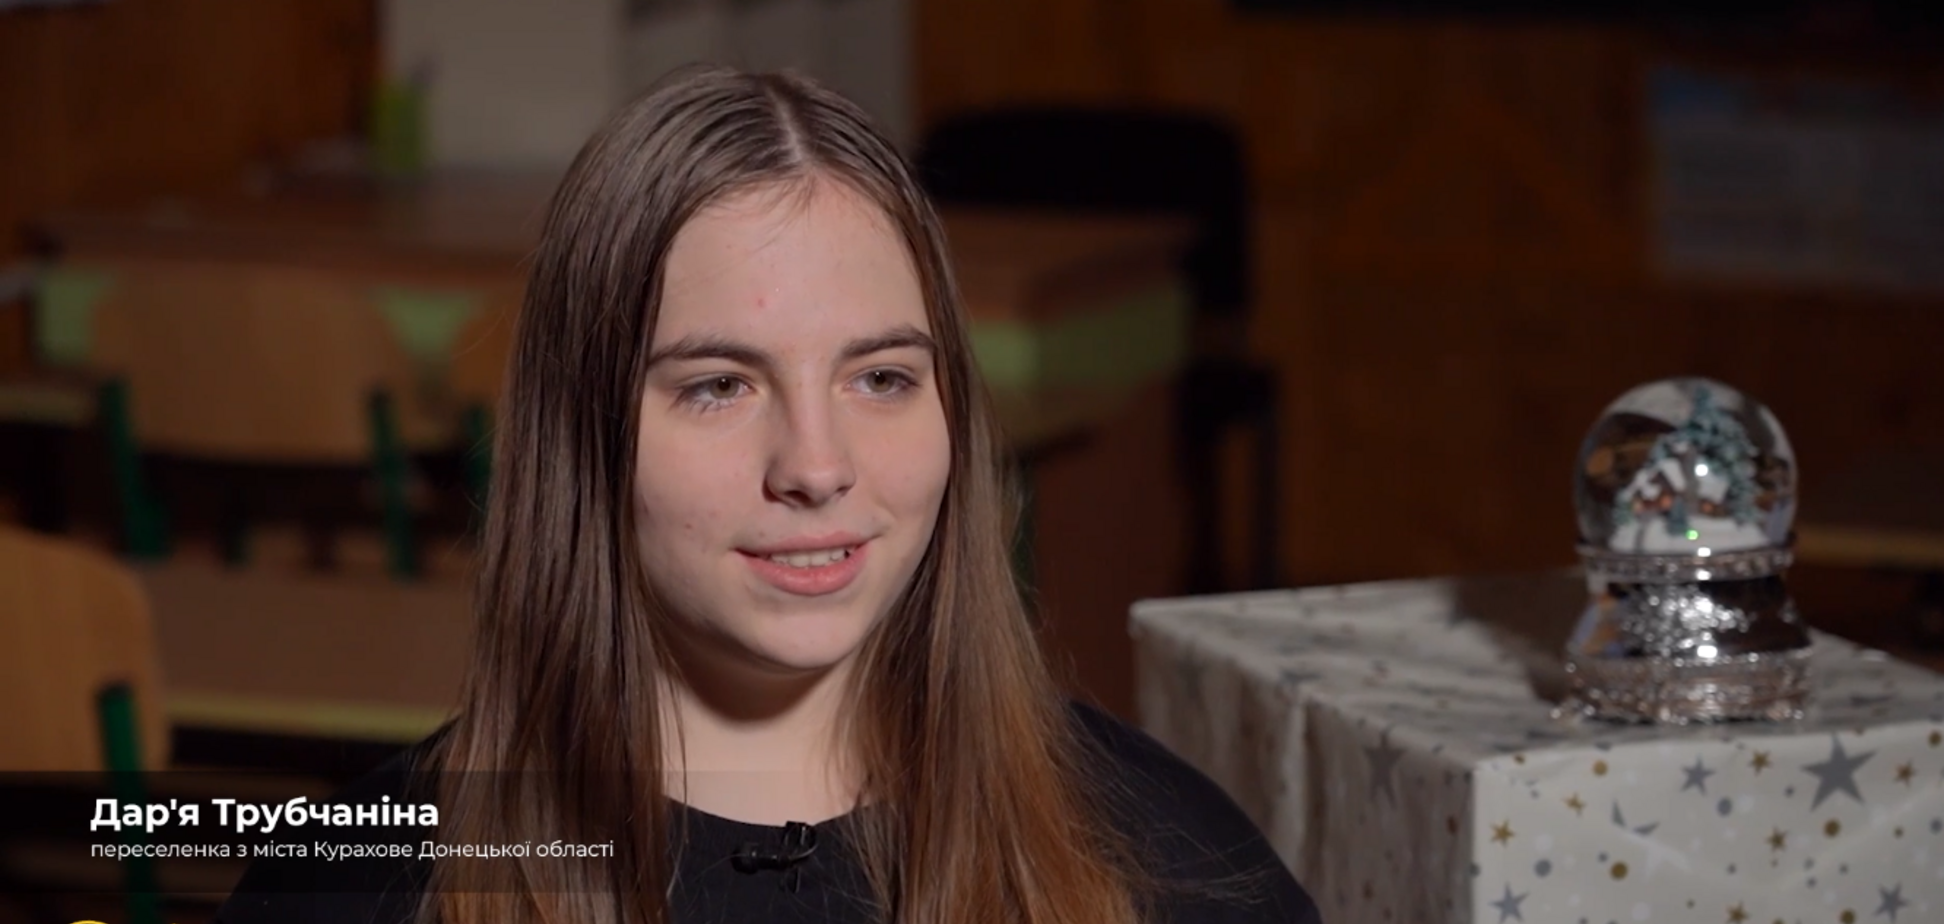 'Мечтаю обнять родных': 15-летняя Дарья с Донетчины рассказала свою историю музею 'Голоса мирных' Фонда Рината Ахметова